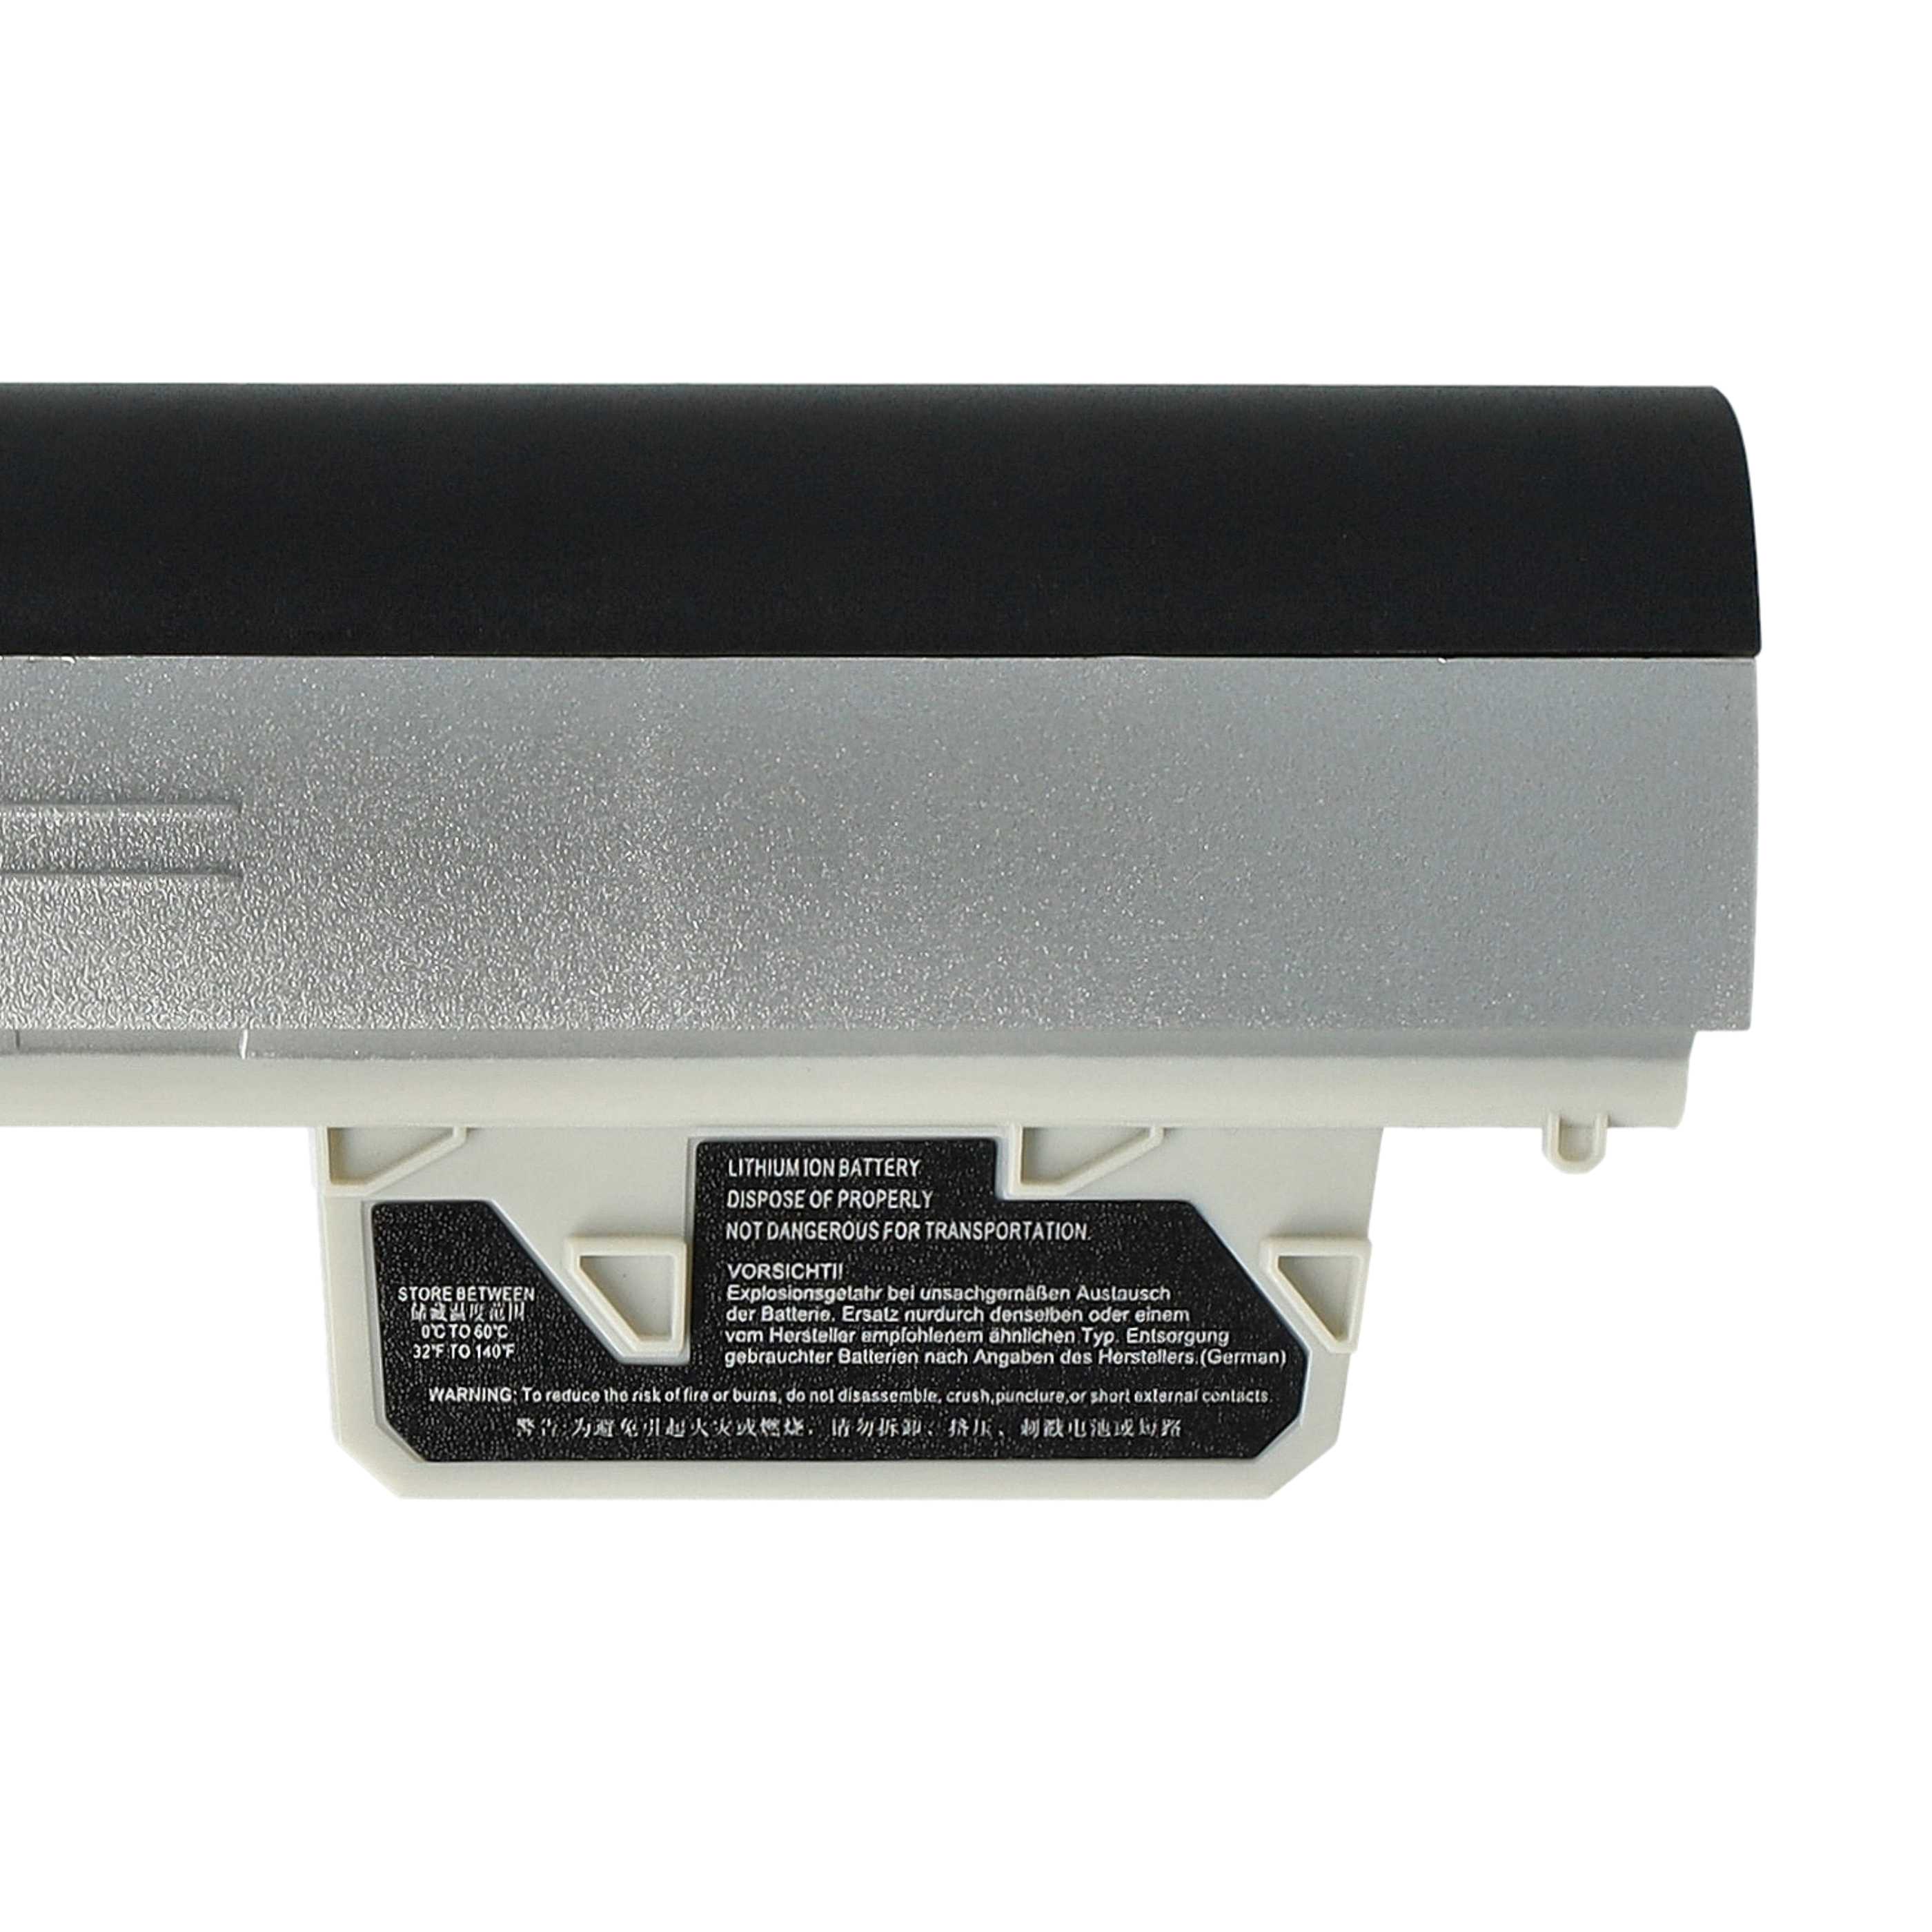 Batterie remplace HP 626869-851, 626869-321 pour ordinateur portable - 4400mAh 11,1V Li-ion, gris argenté